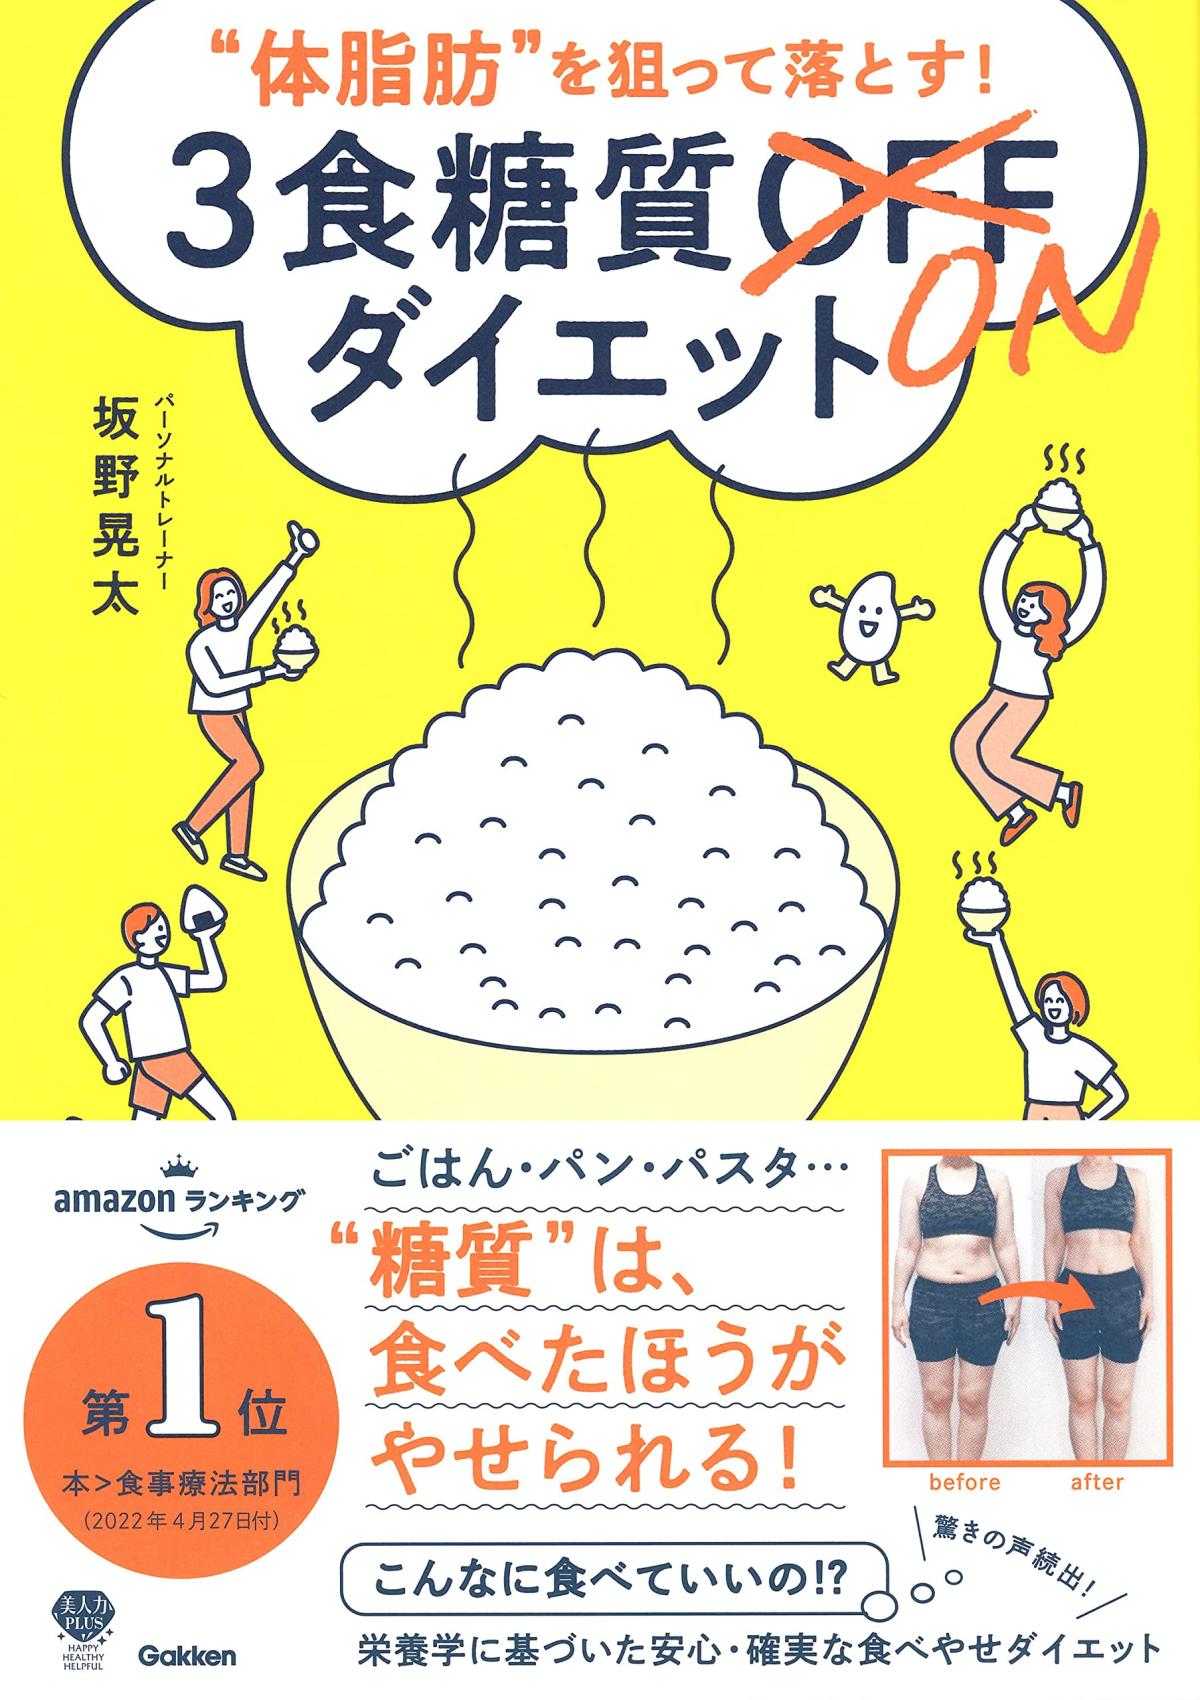 坂野晃太さんが6月23日に書籍を出版されました！【栄養コンシェルジュ取得後のご活躍】